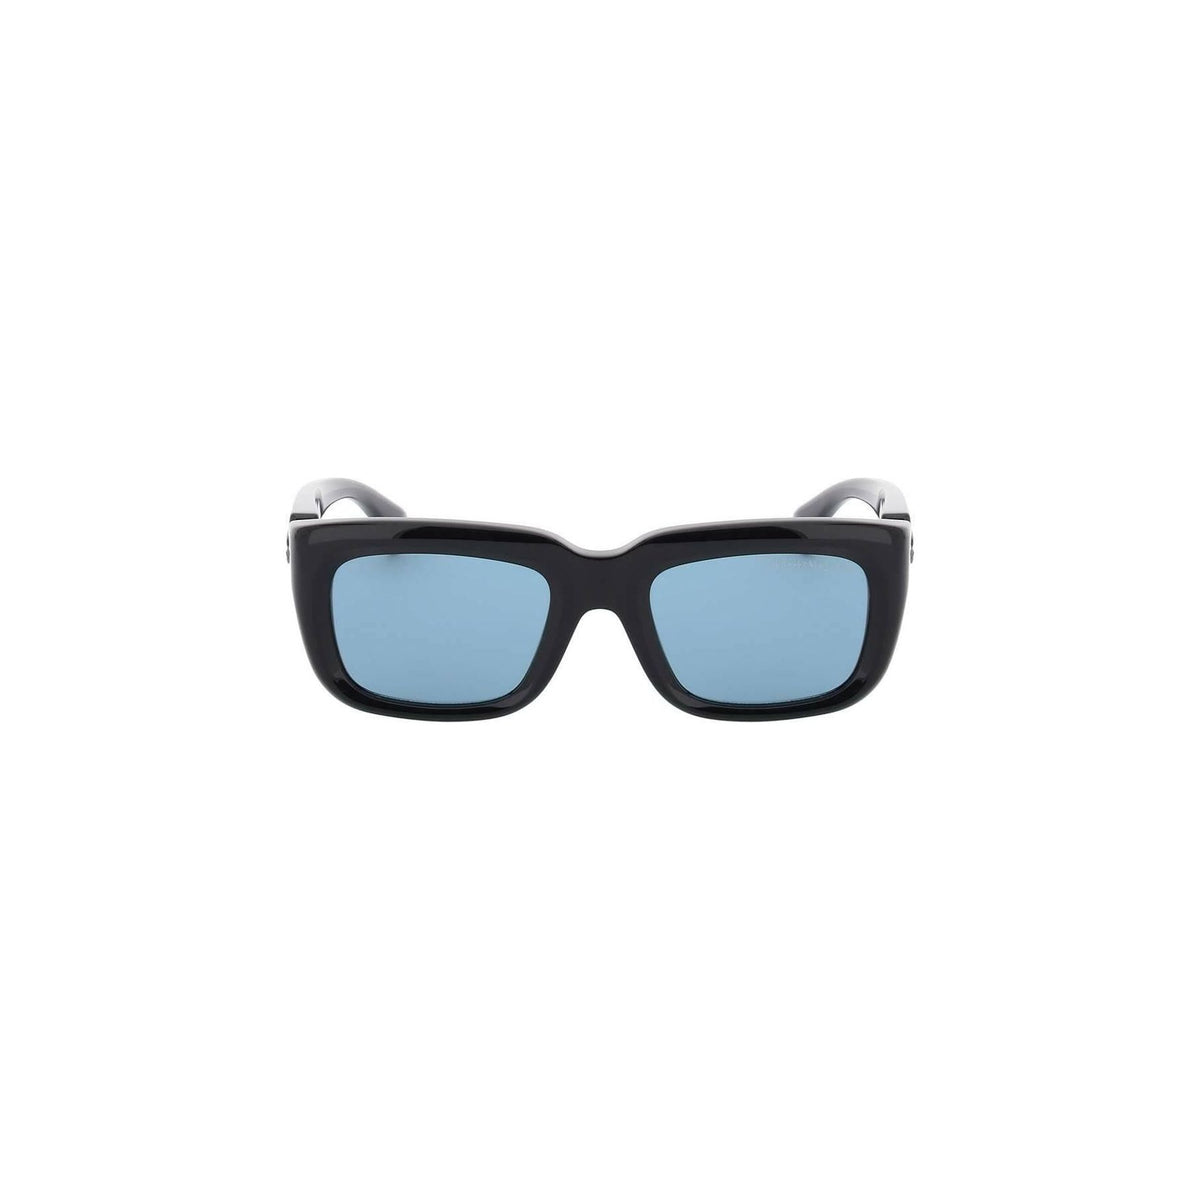 ALEXANDER MCQUEEN - Floating Skull Rectangular Sunglasses in Black/Blue - JOHN JULIA